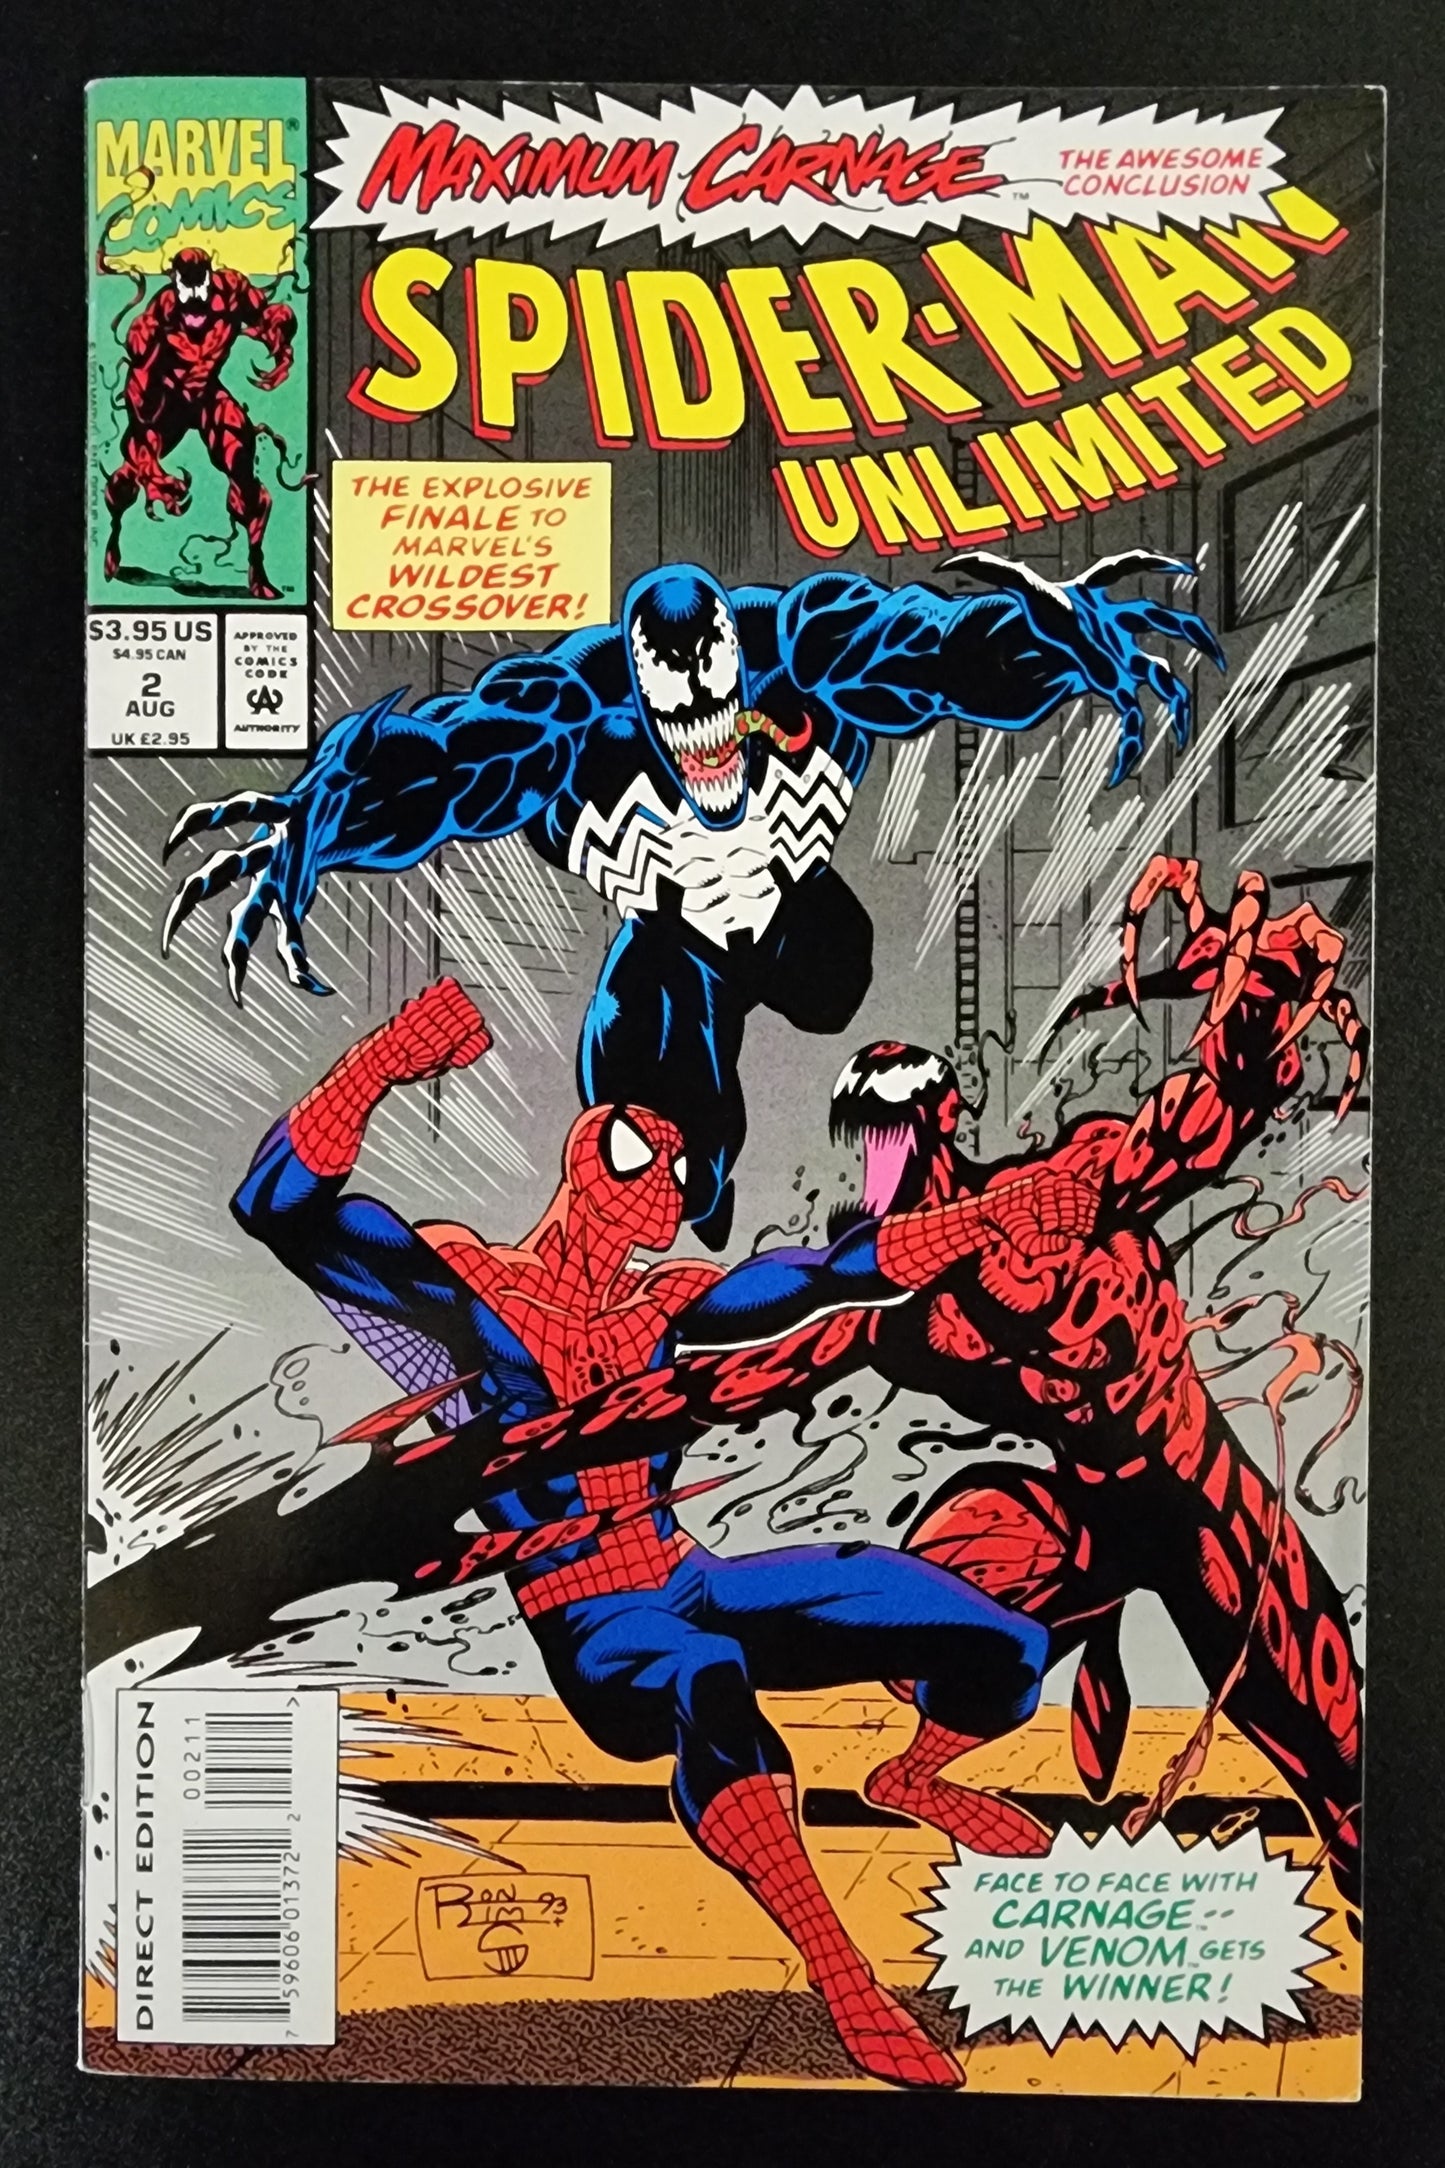 SPIDER-MAN UNLIMITED #2 1993